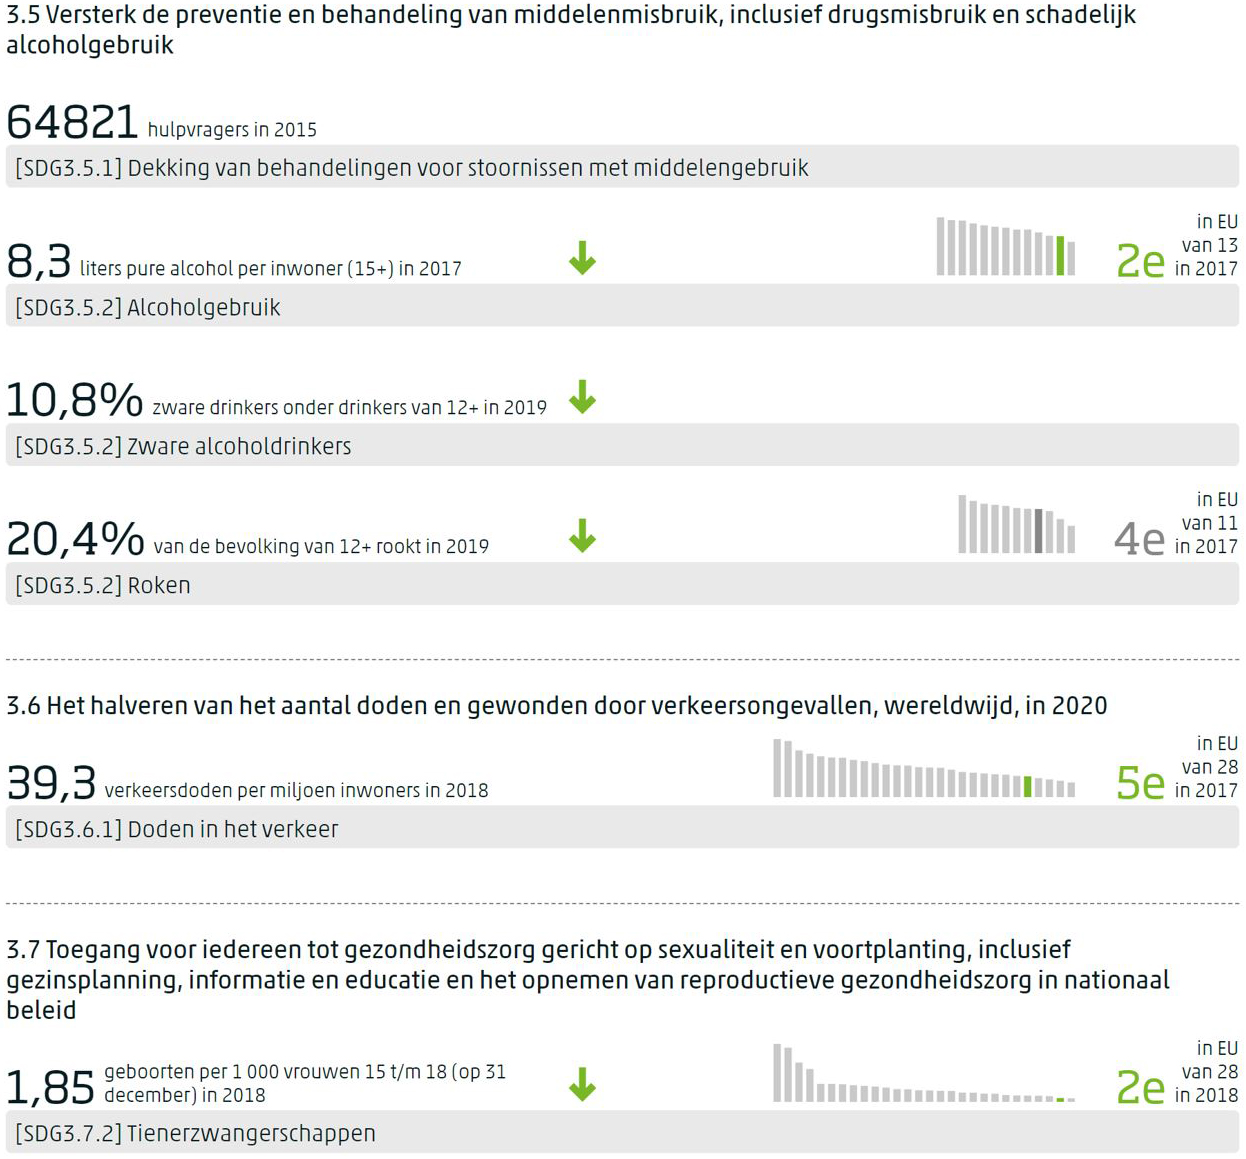 Dashboard voor SDG 3 met per indicator de meest recente waarde, de trend op middellange termijn indien gemeten, en de positie van Nederland in de EU indien waargenomen.